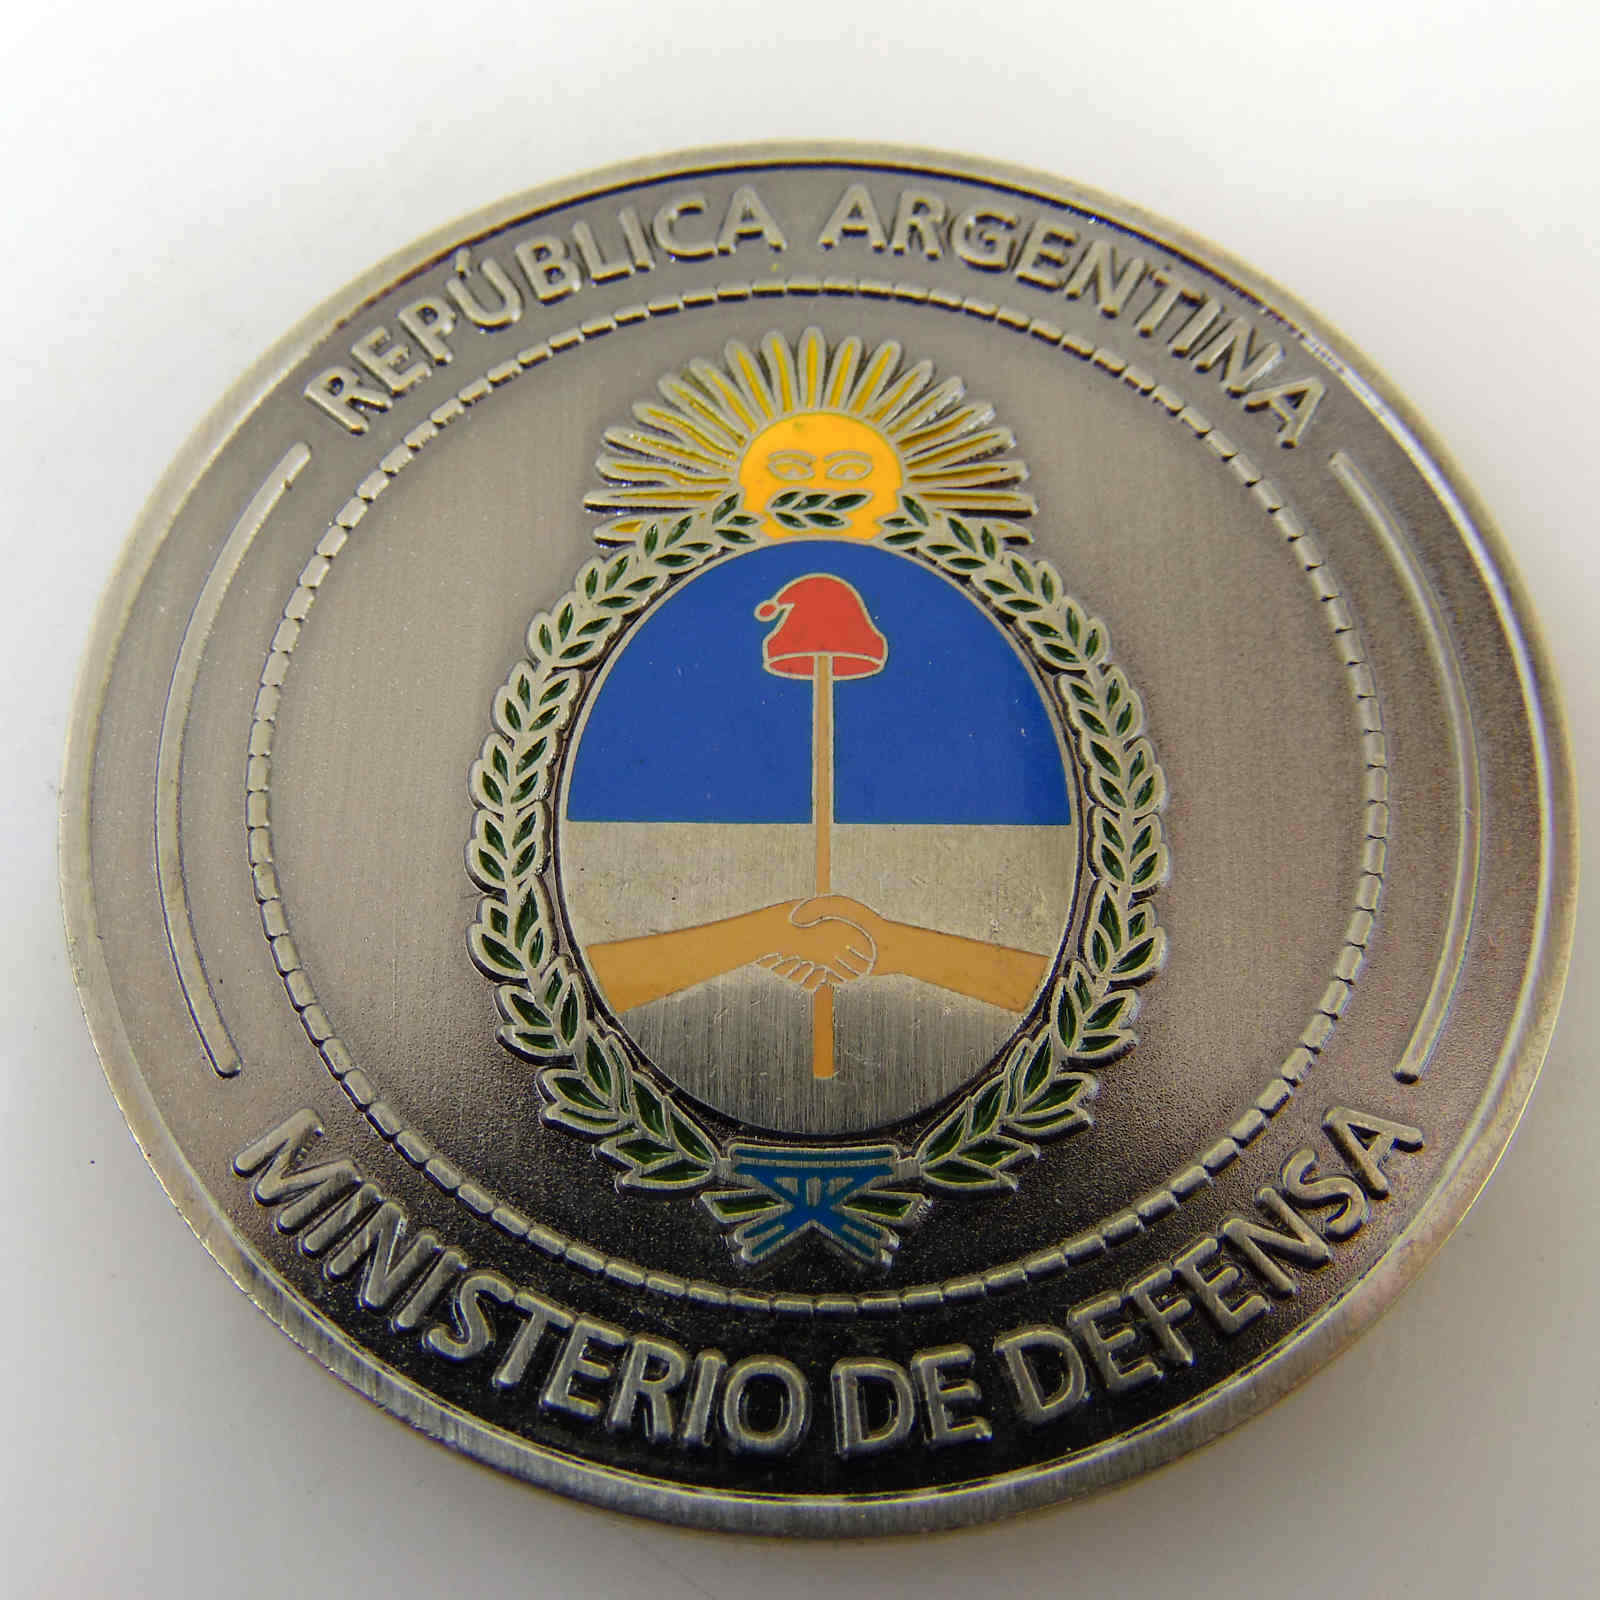 REPUBLICA ARGENTINA MINISTERIO DE DEFENSA CHALLENGE COIN